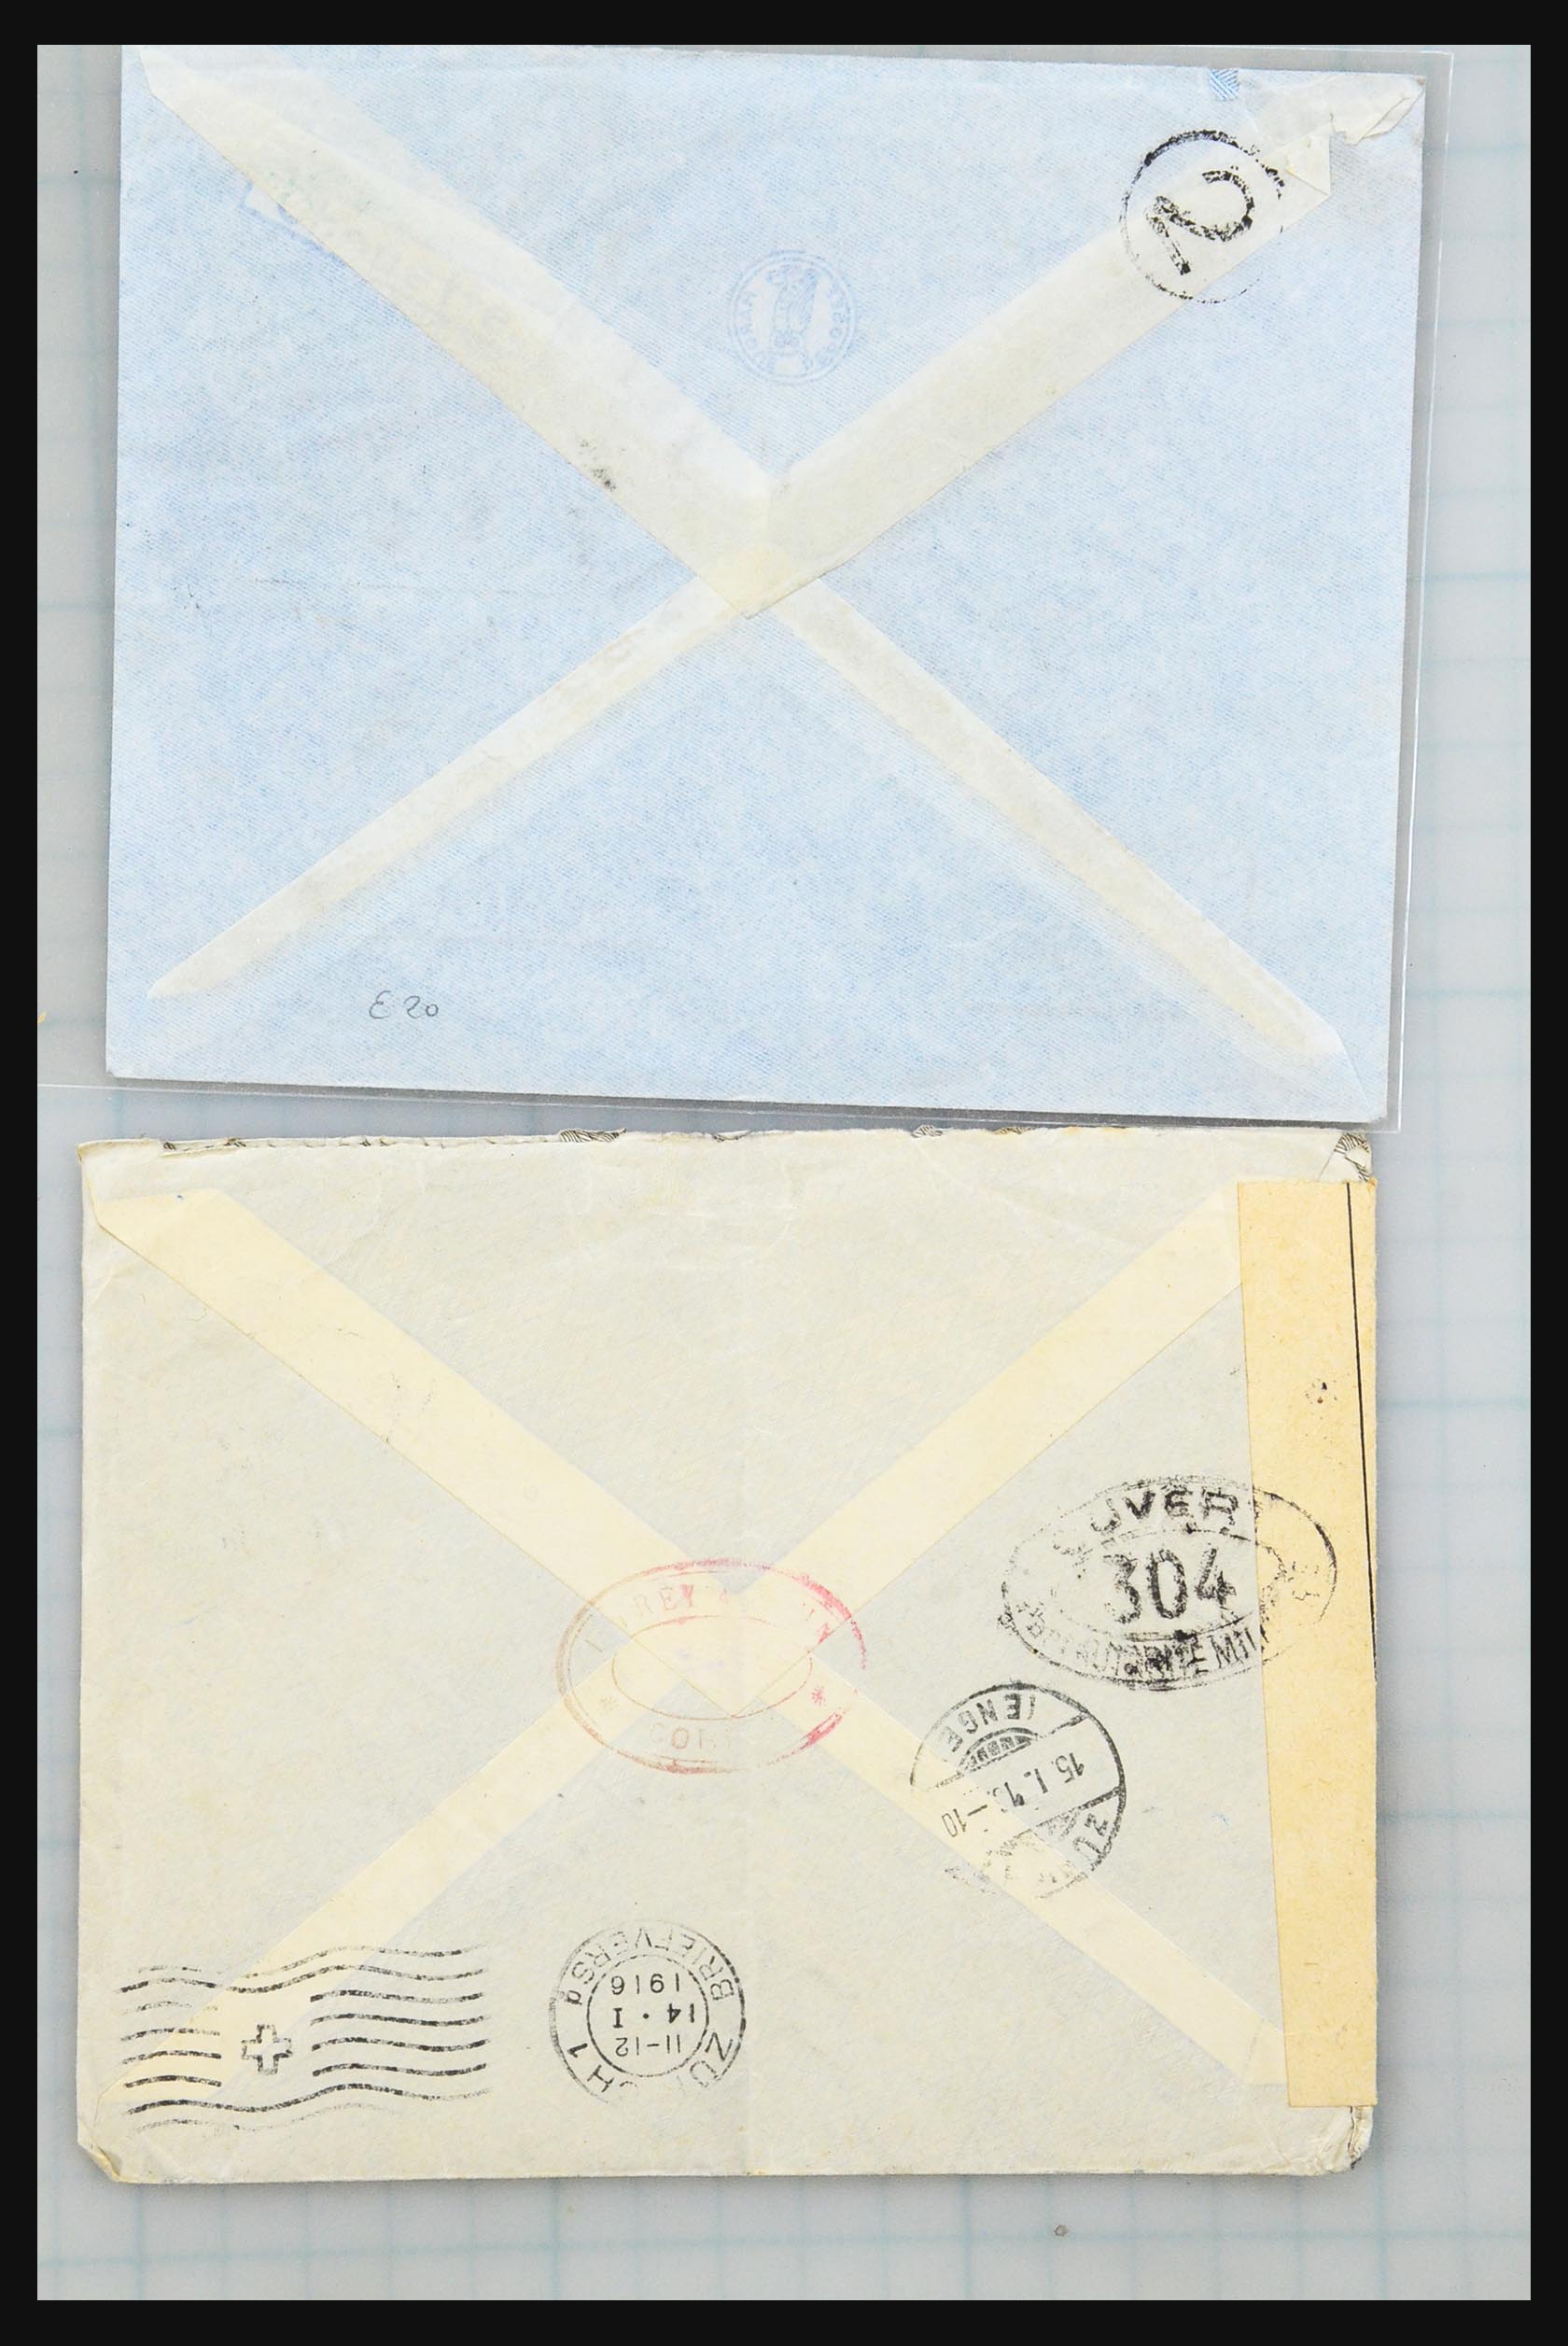 31358 037 - 31358 Portugal/Luxemburg/Griekenland brieven 1880-1960.